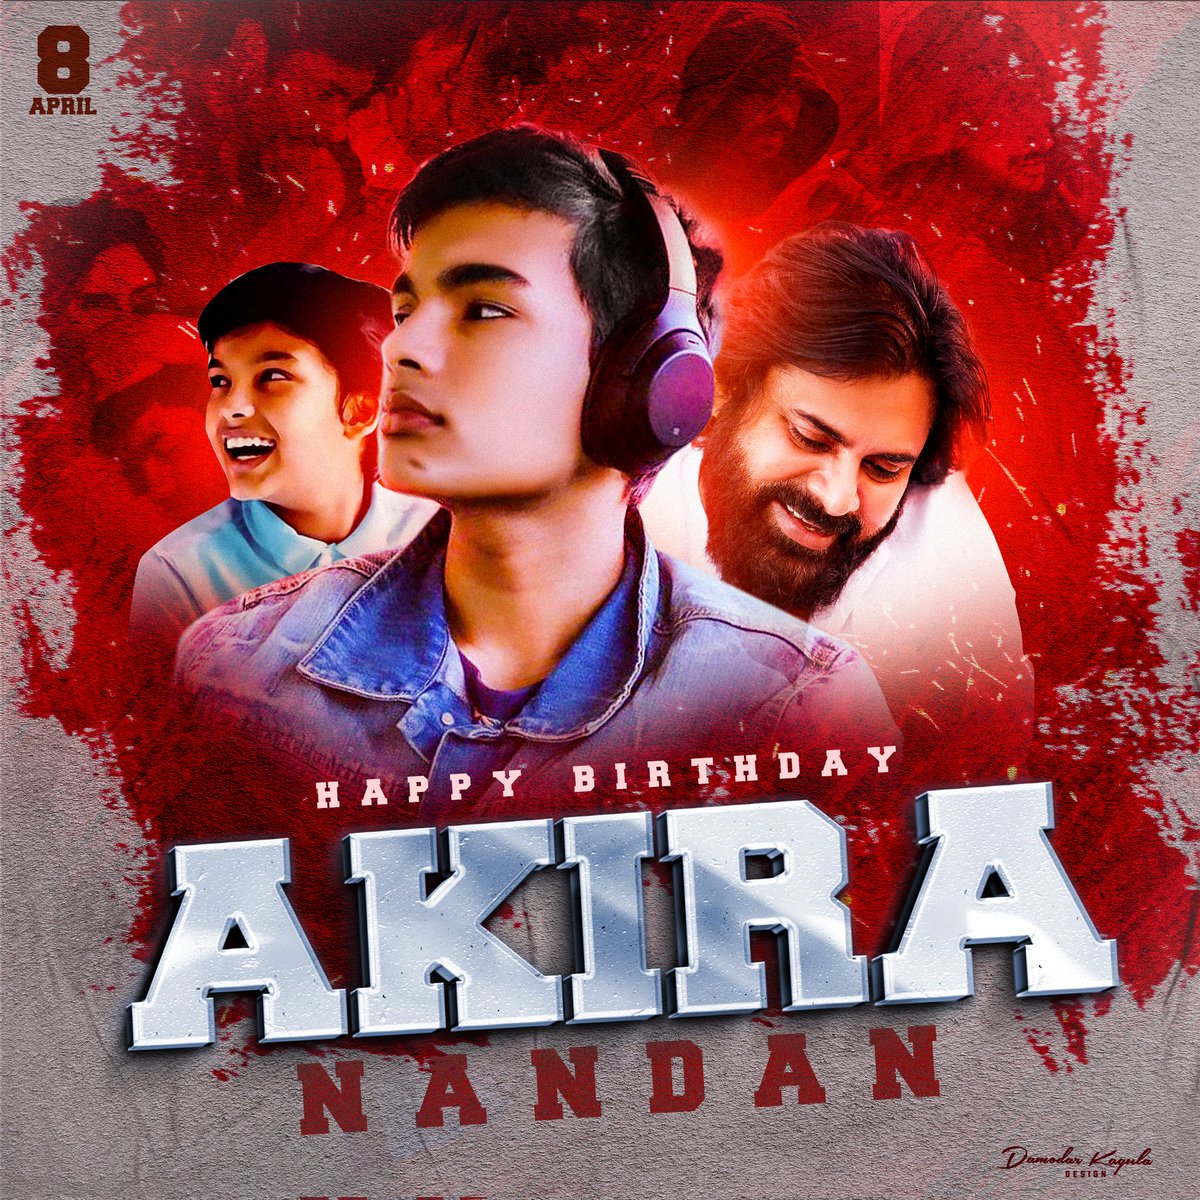 Happy Birthday Little Power Star #AkiraNandan 😍

#HBDAkiraNandan